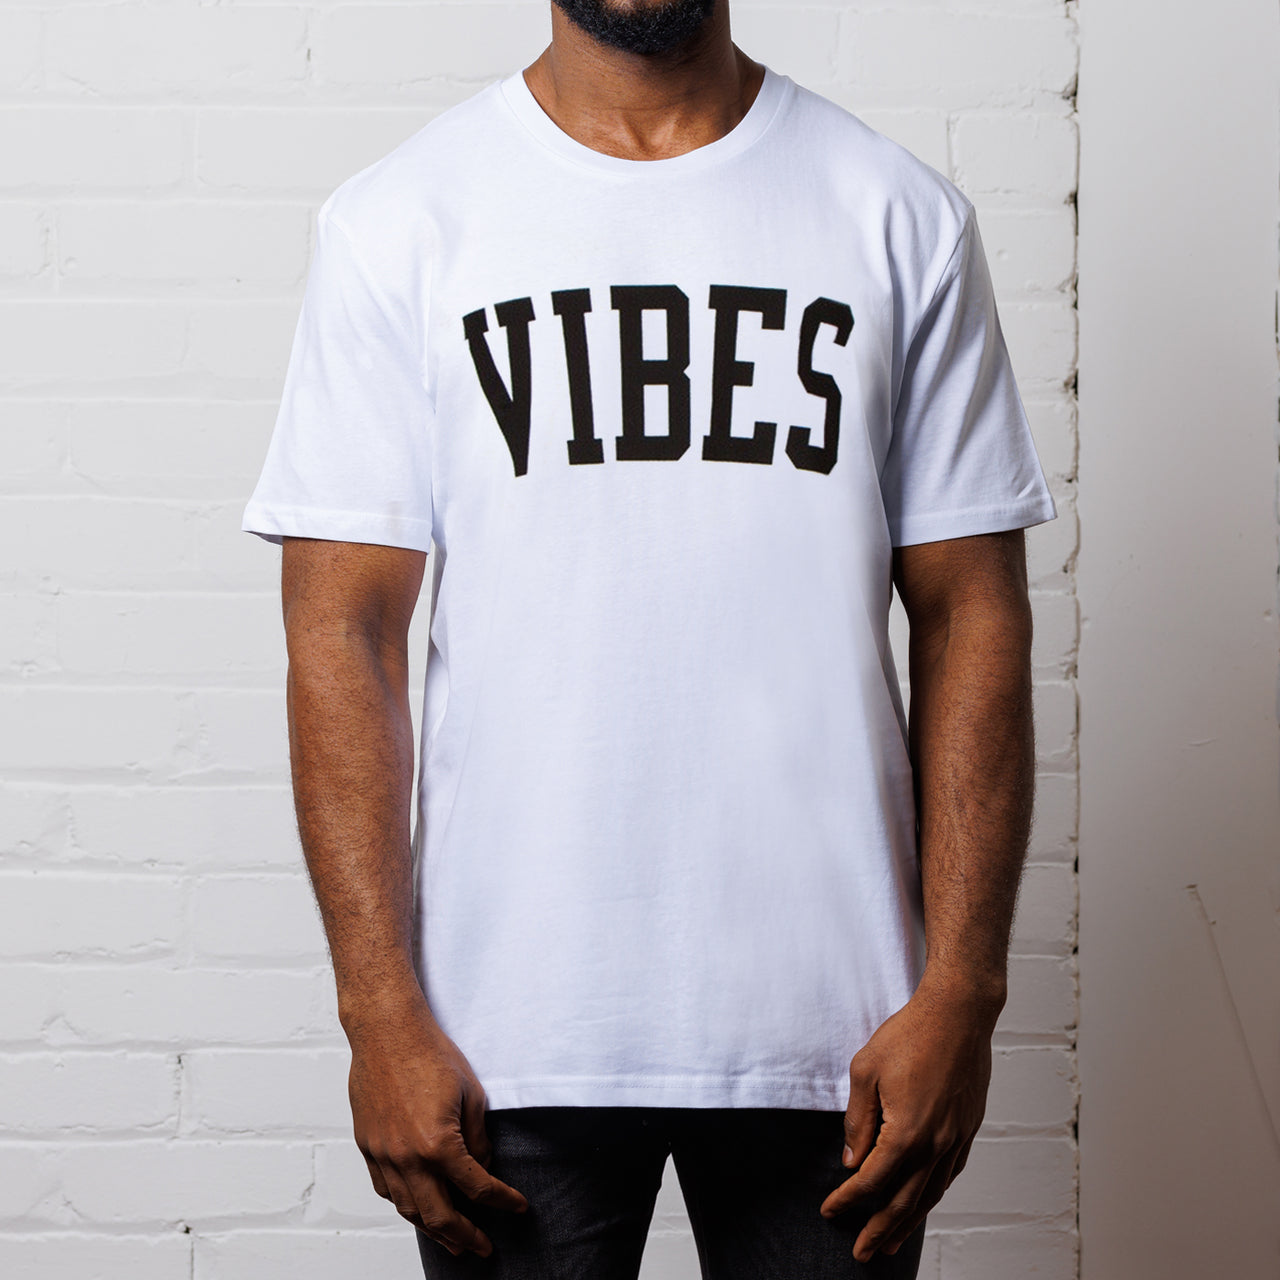 Vibes - Tshirt - White